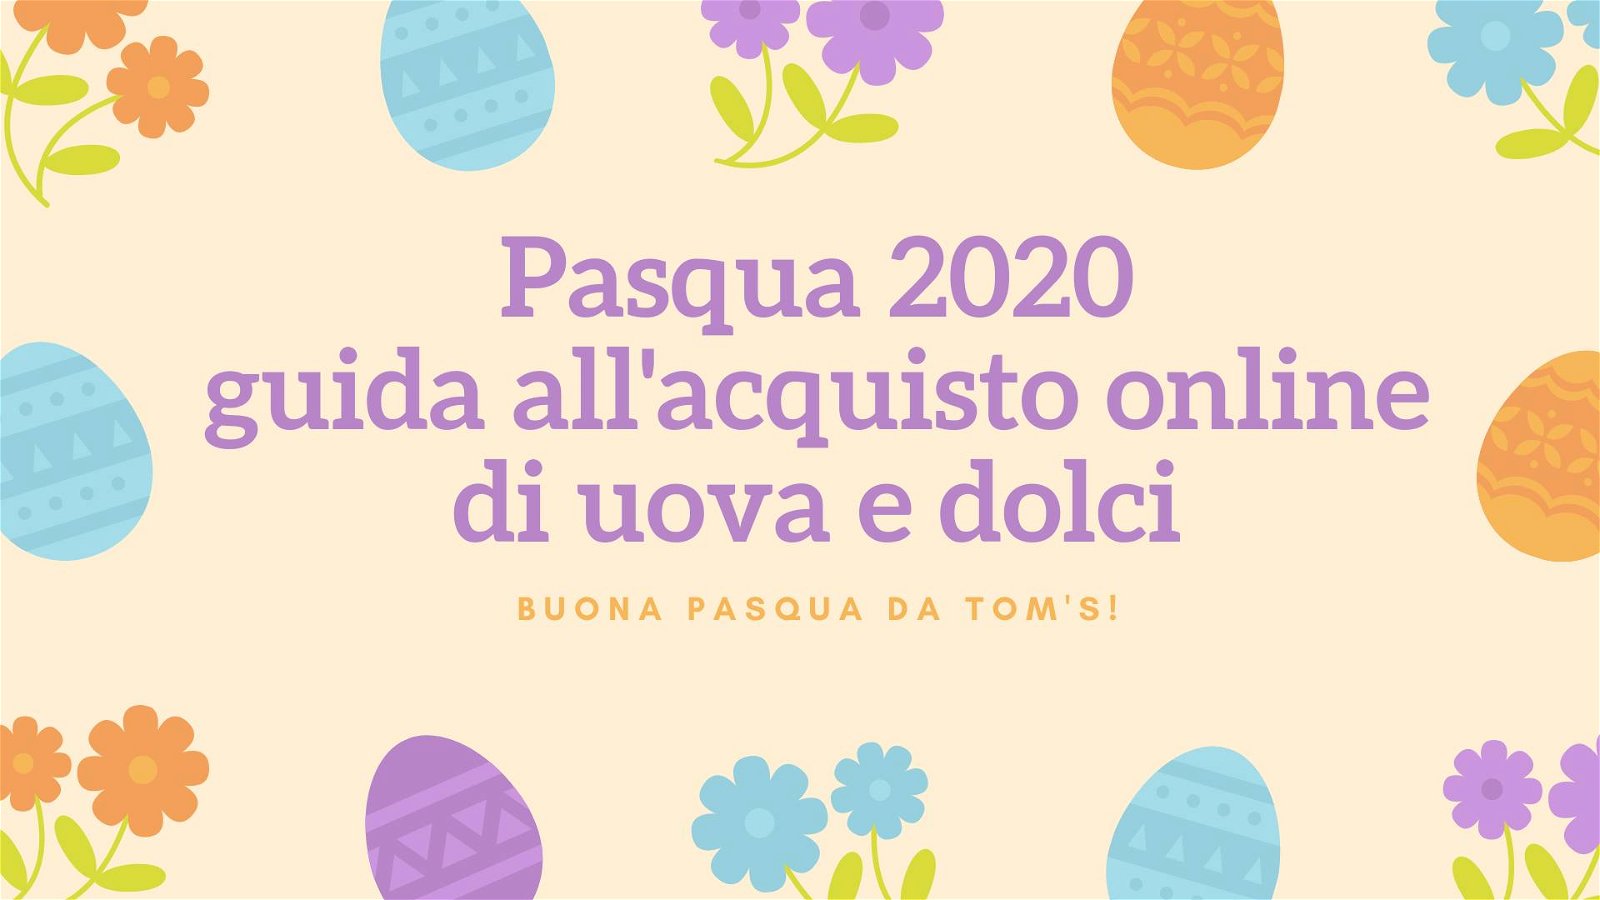 Immagine di Pasqua 2020: acquista online dolci, cesti regalo e uova di Pasqua!